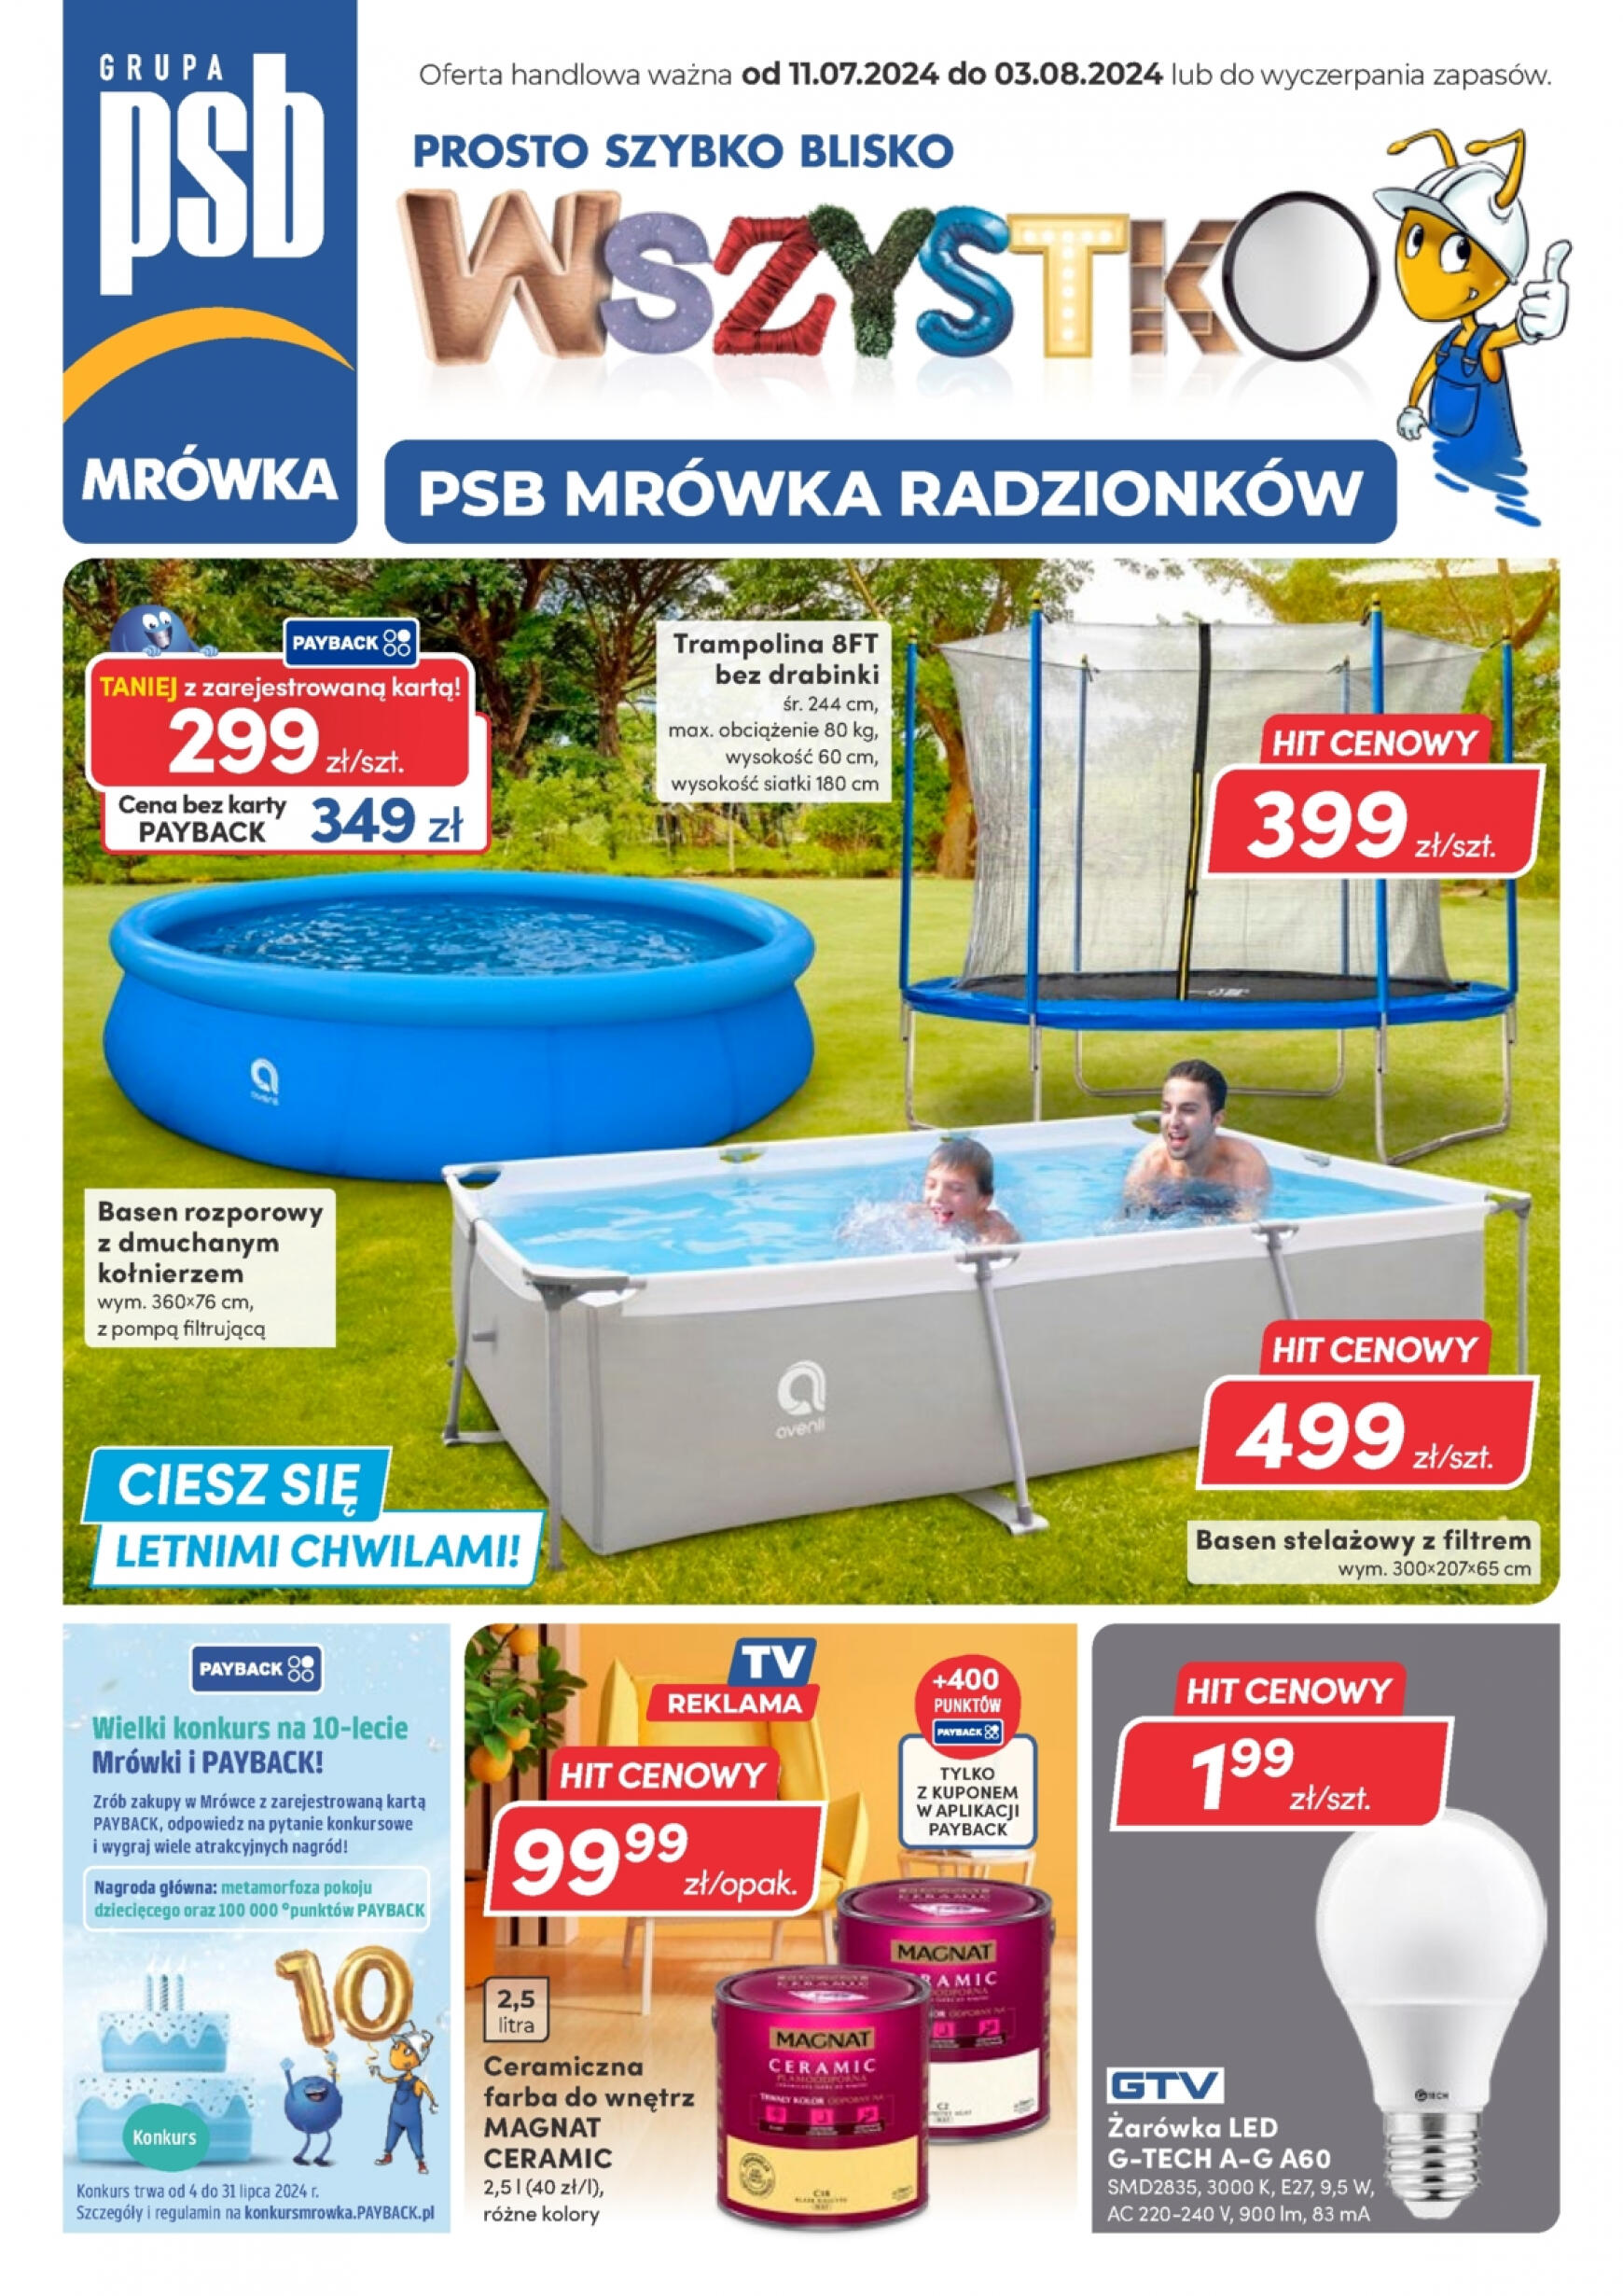 mrowka - Mrówka - Radzionków gazetka aktualna ważna od 11.07. - 03.08.